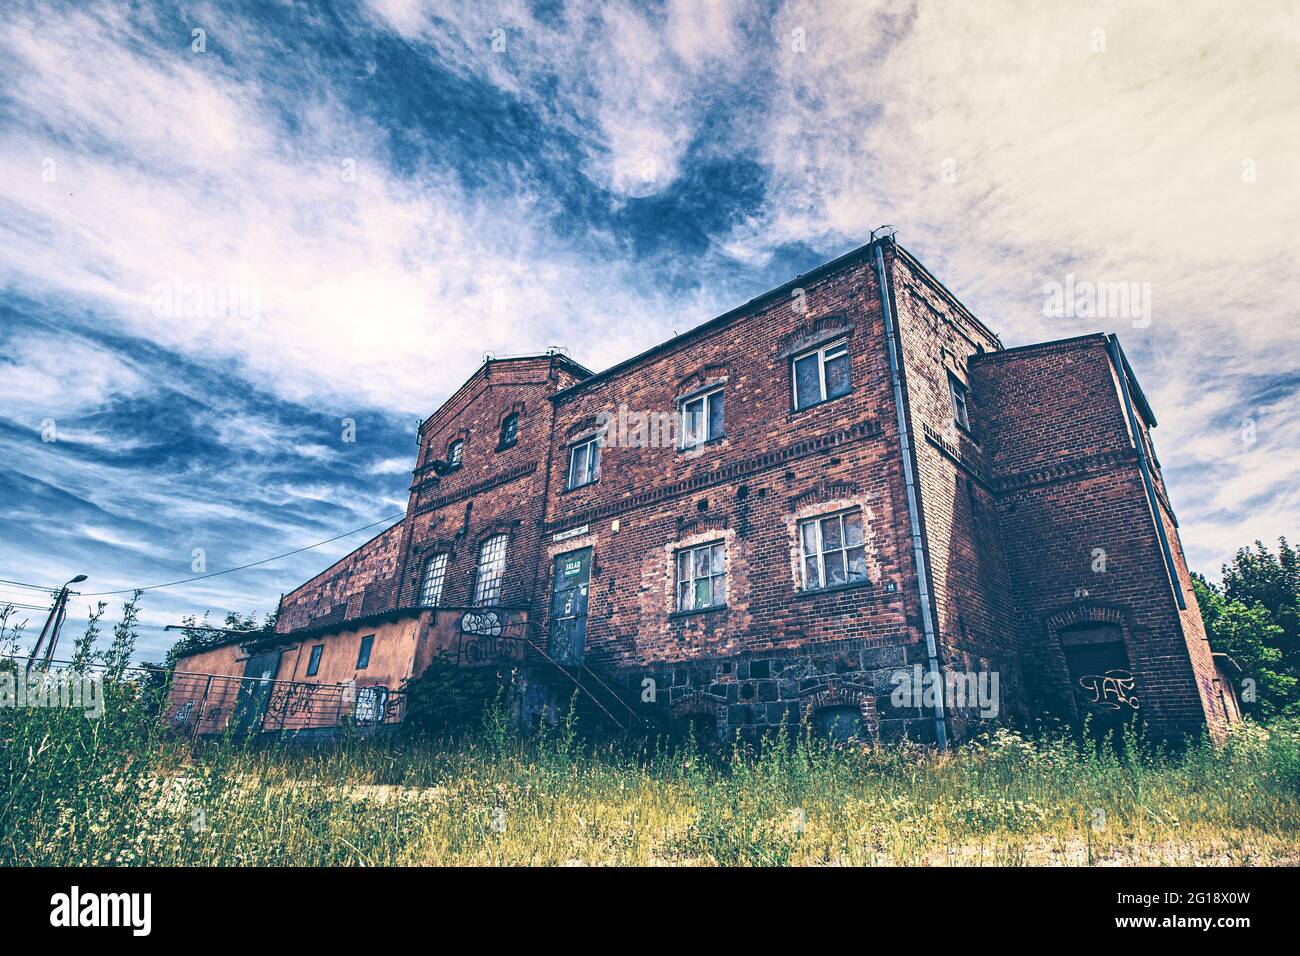 Monumentales Lost Place Horrorhaus in krafttigen Farben. Verlassenes Gebäude mitten im Niergendwo getarnt als alte, stillgelegte Brauerei und Fabrik Stockfoto